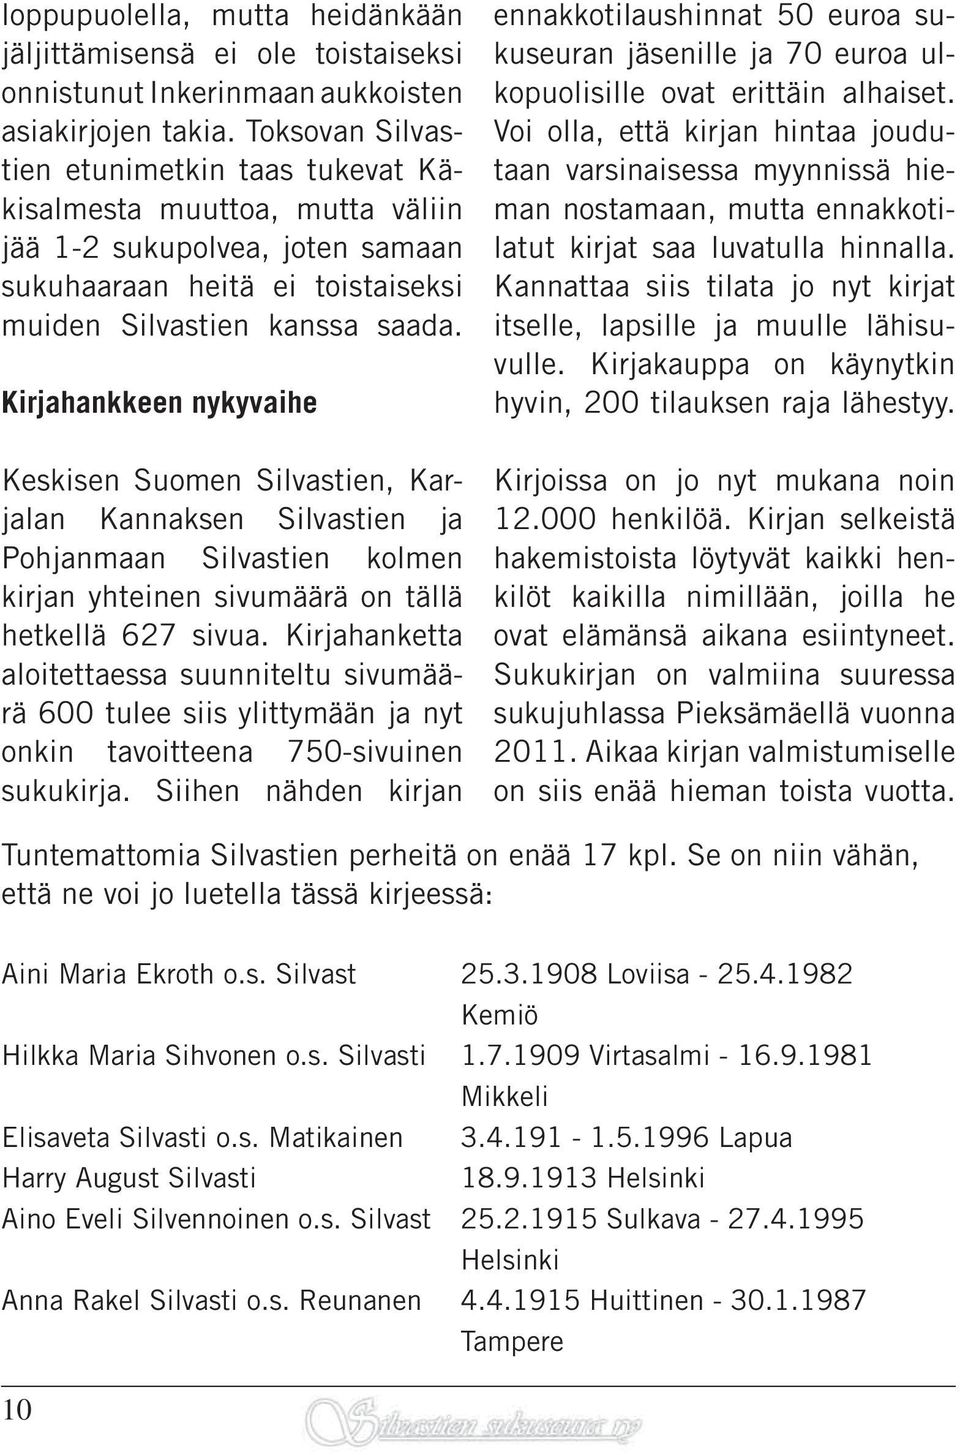 Kirjahankkeen nykyvaihe Keskisen Suomen Silvastien, Karjalan Kannaksen Silvastien ja Pohjanmaan Silvastien kolmen kirjan yhteinen sivumäärä on tällä hetkellä 627 sivua.